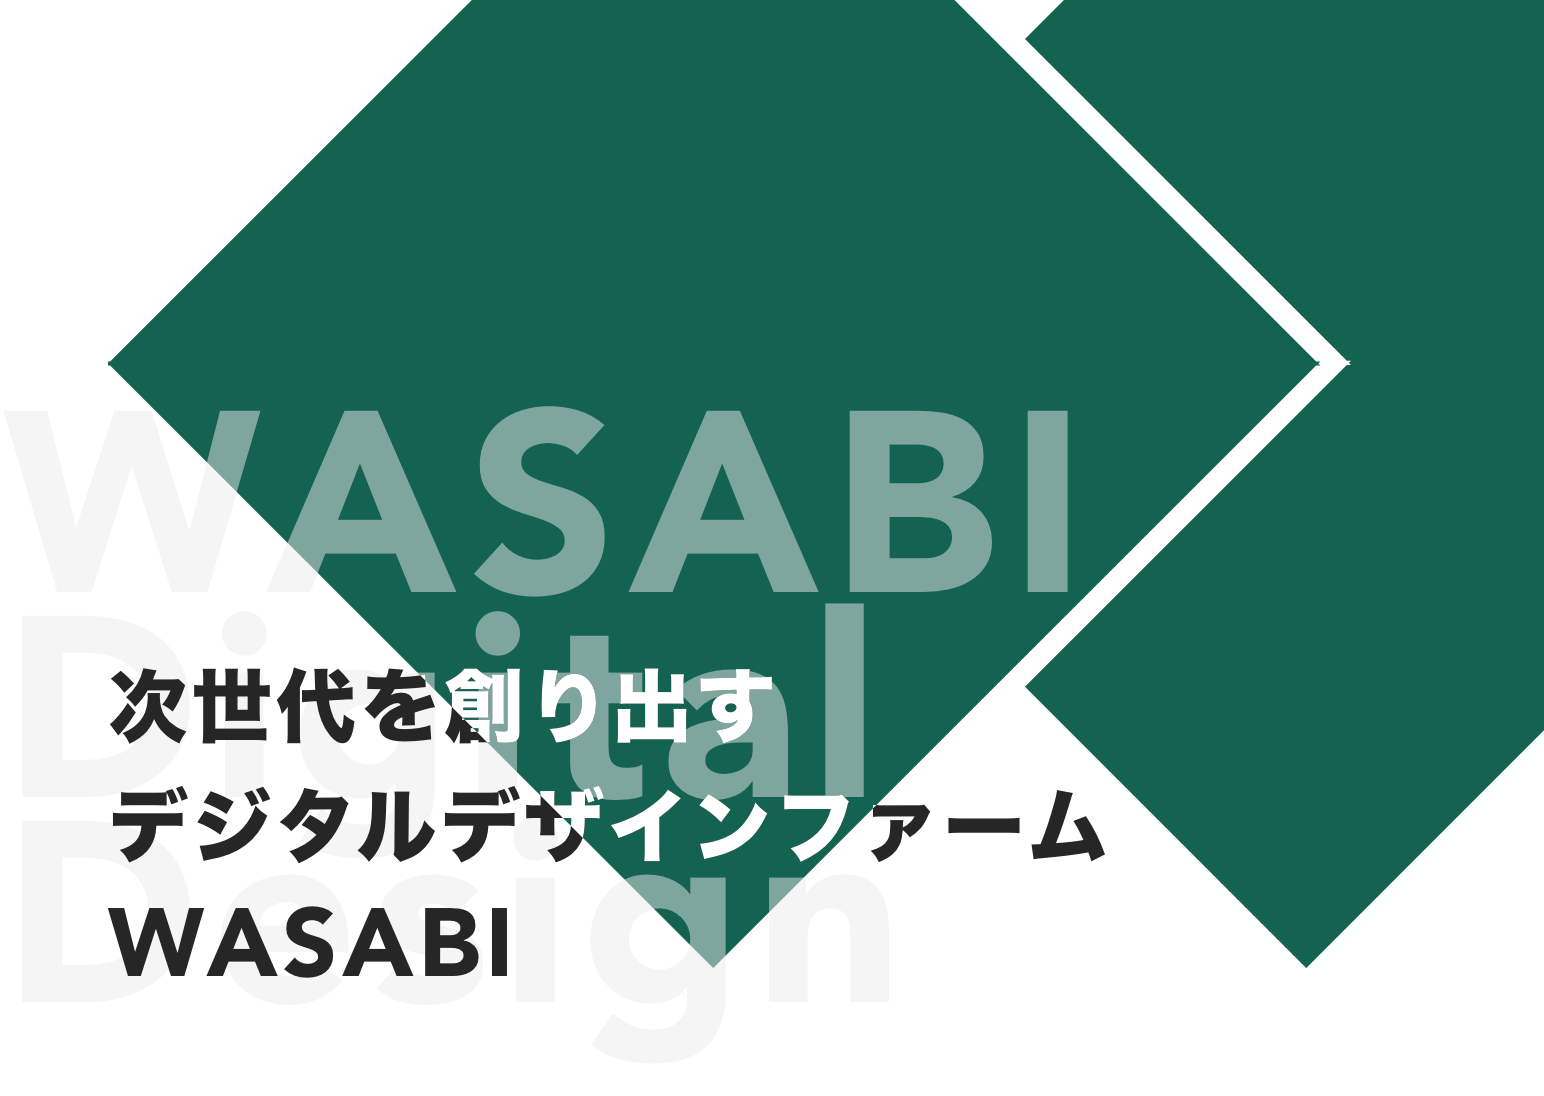 WASABIは次世代を創り出すコンサルティングファームです。